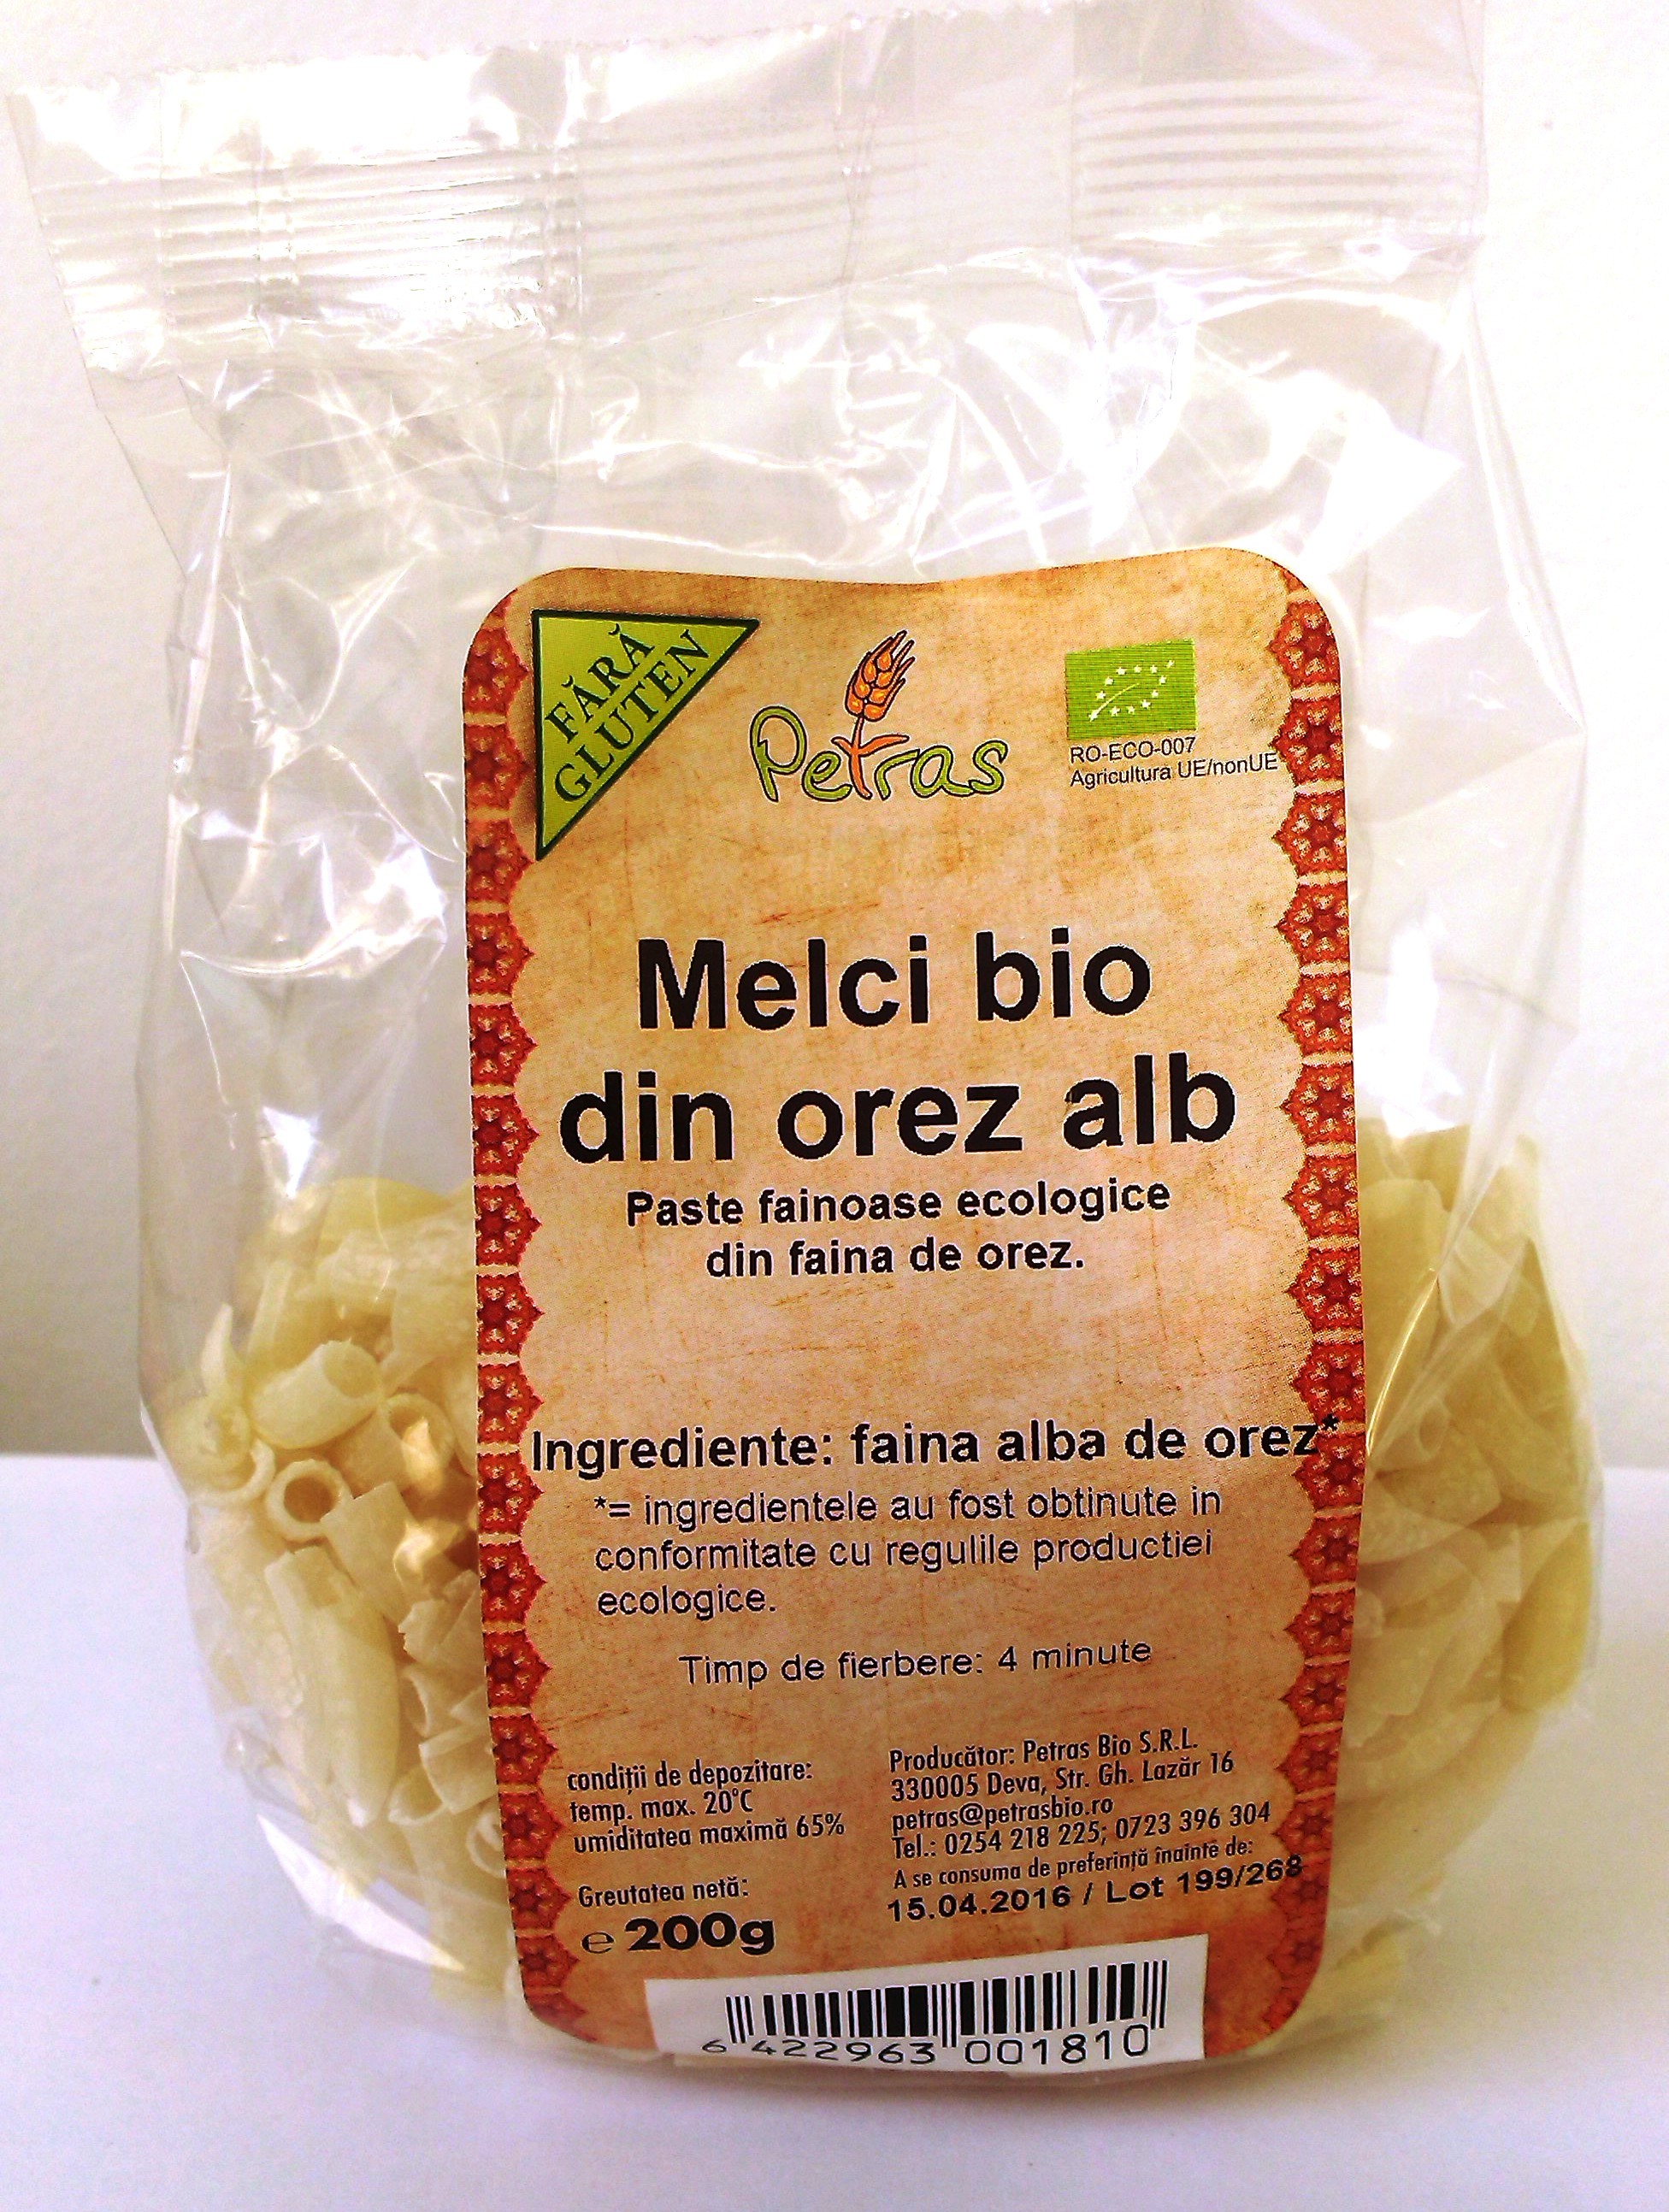 Petras Bio Melci din orez alb eco-bio fara gluten 200g - petras